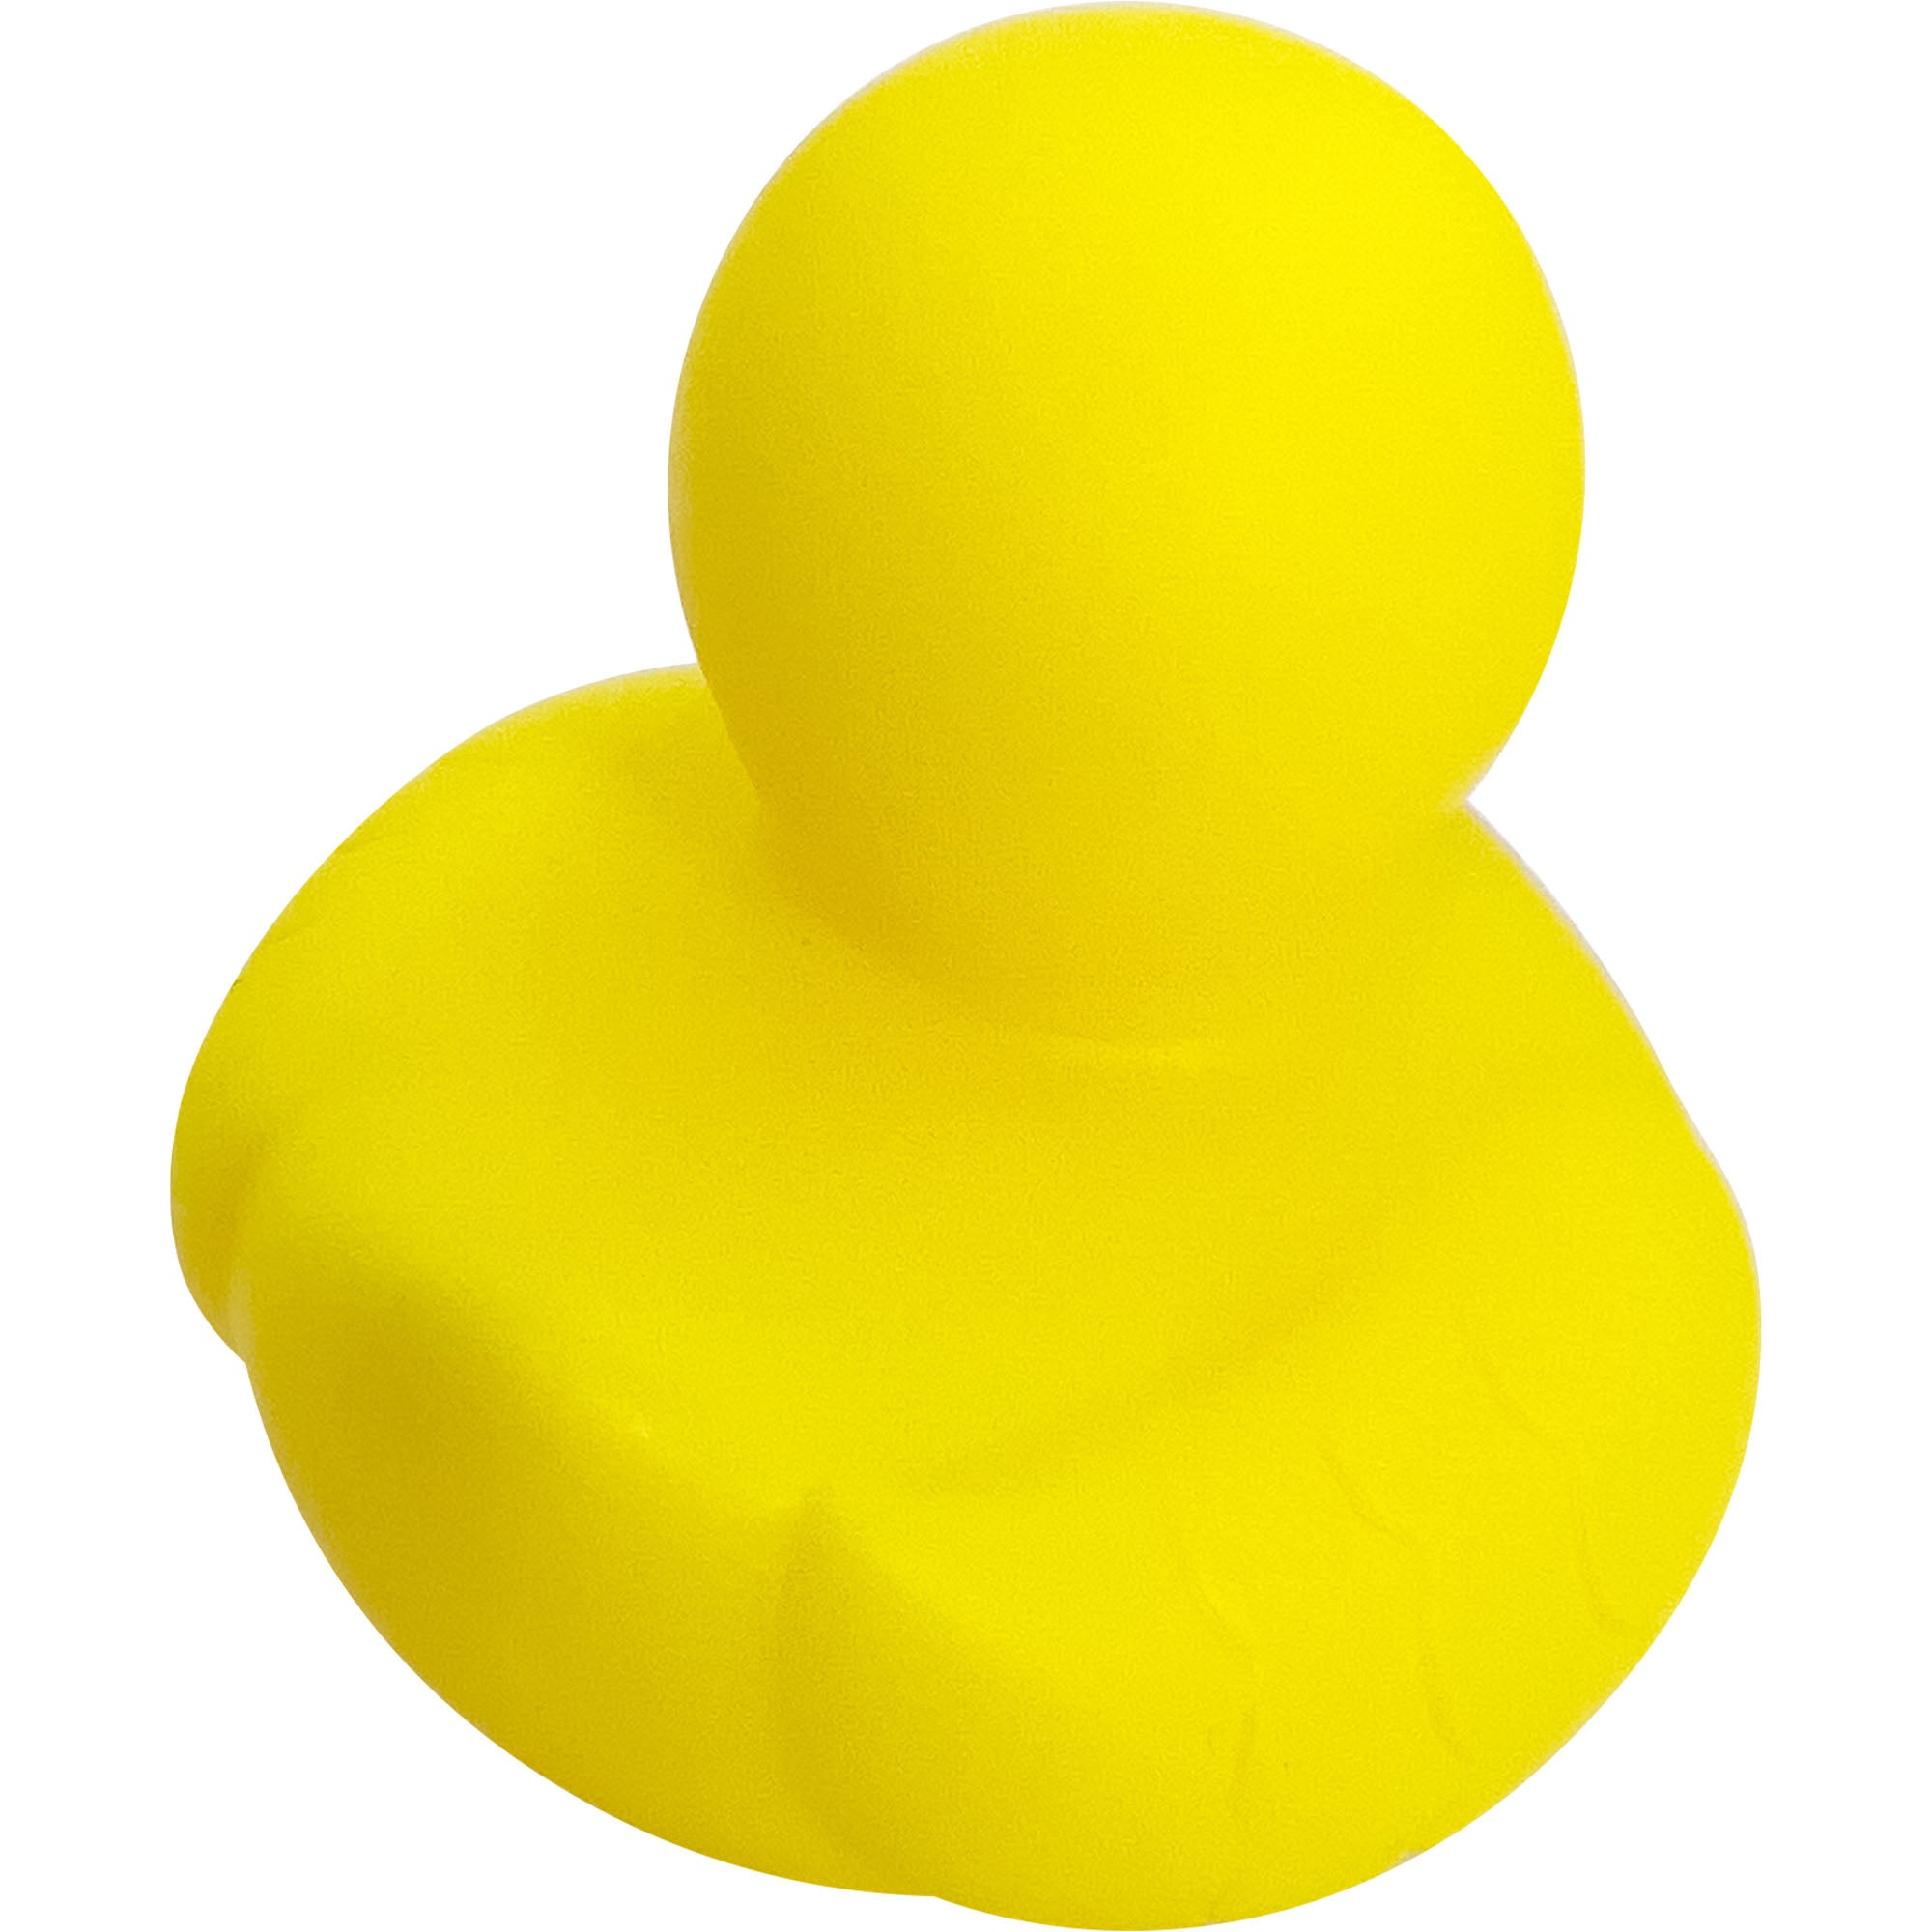 Rubber Ducks – www.